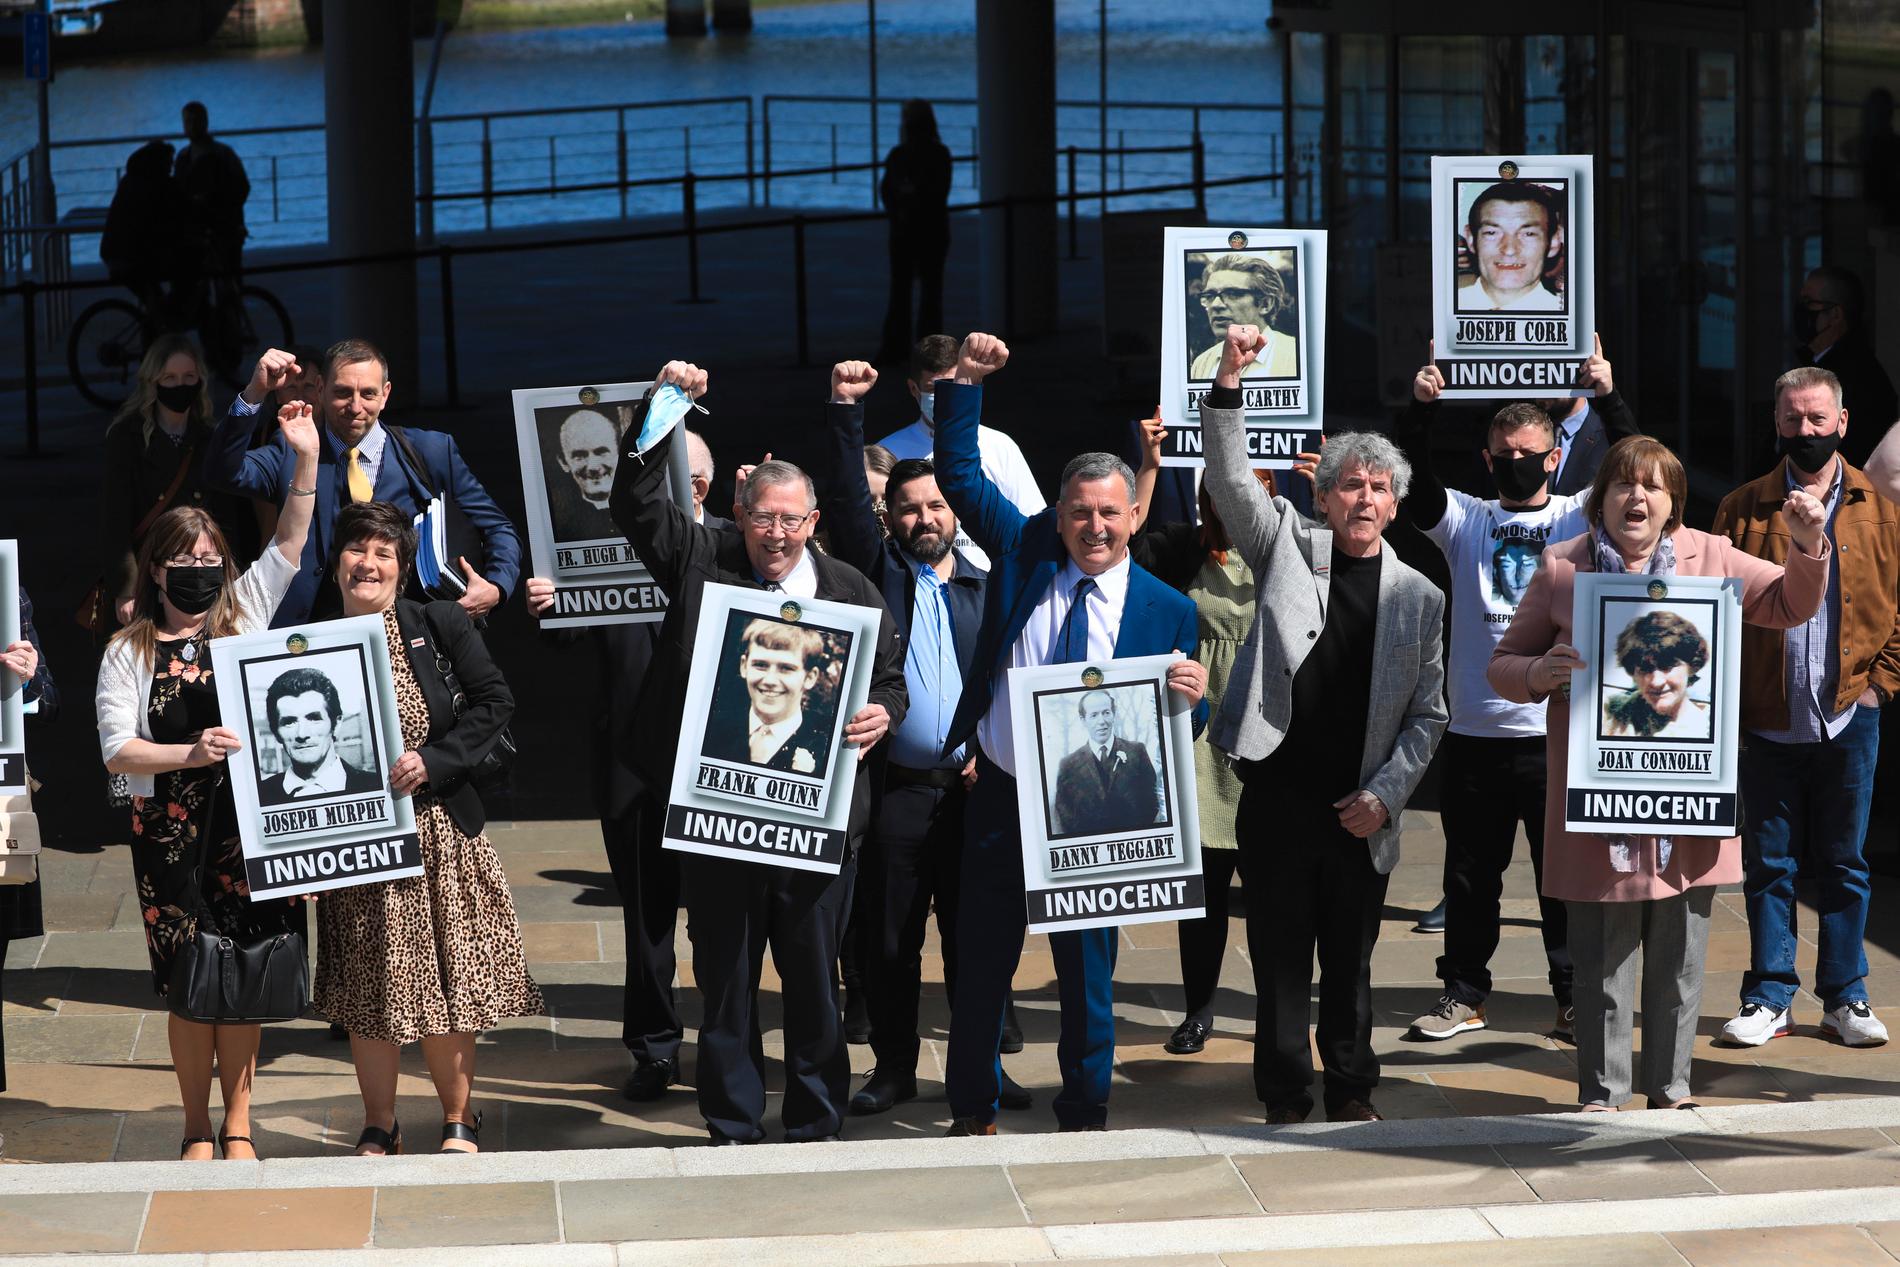 Anhöriga till offren i Ballymurphy firade oskyldigförklarandet i tisdags.